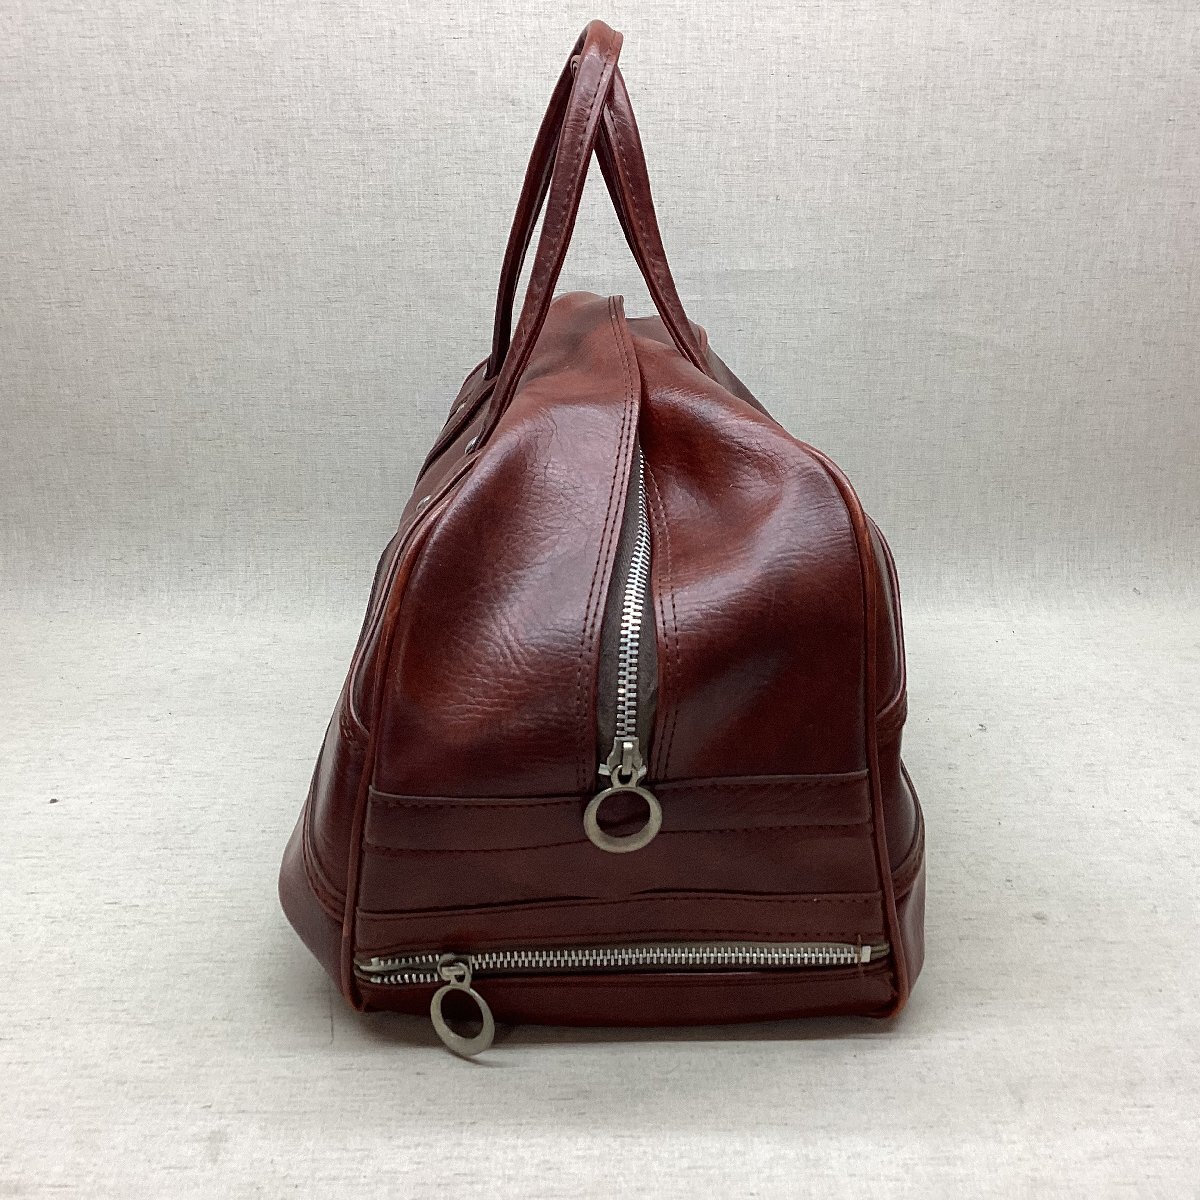 #SPALDING Spalding Vintage Boston bag tea color bottom pra tack side pocket used beautiful goods /1.1kg#